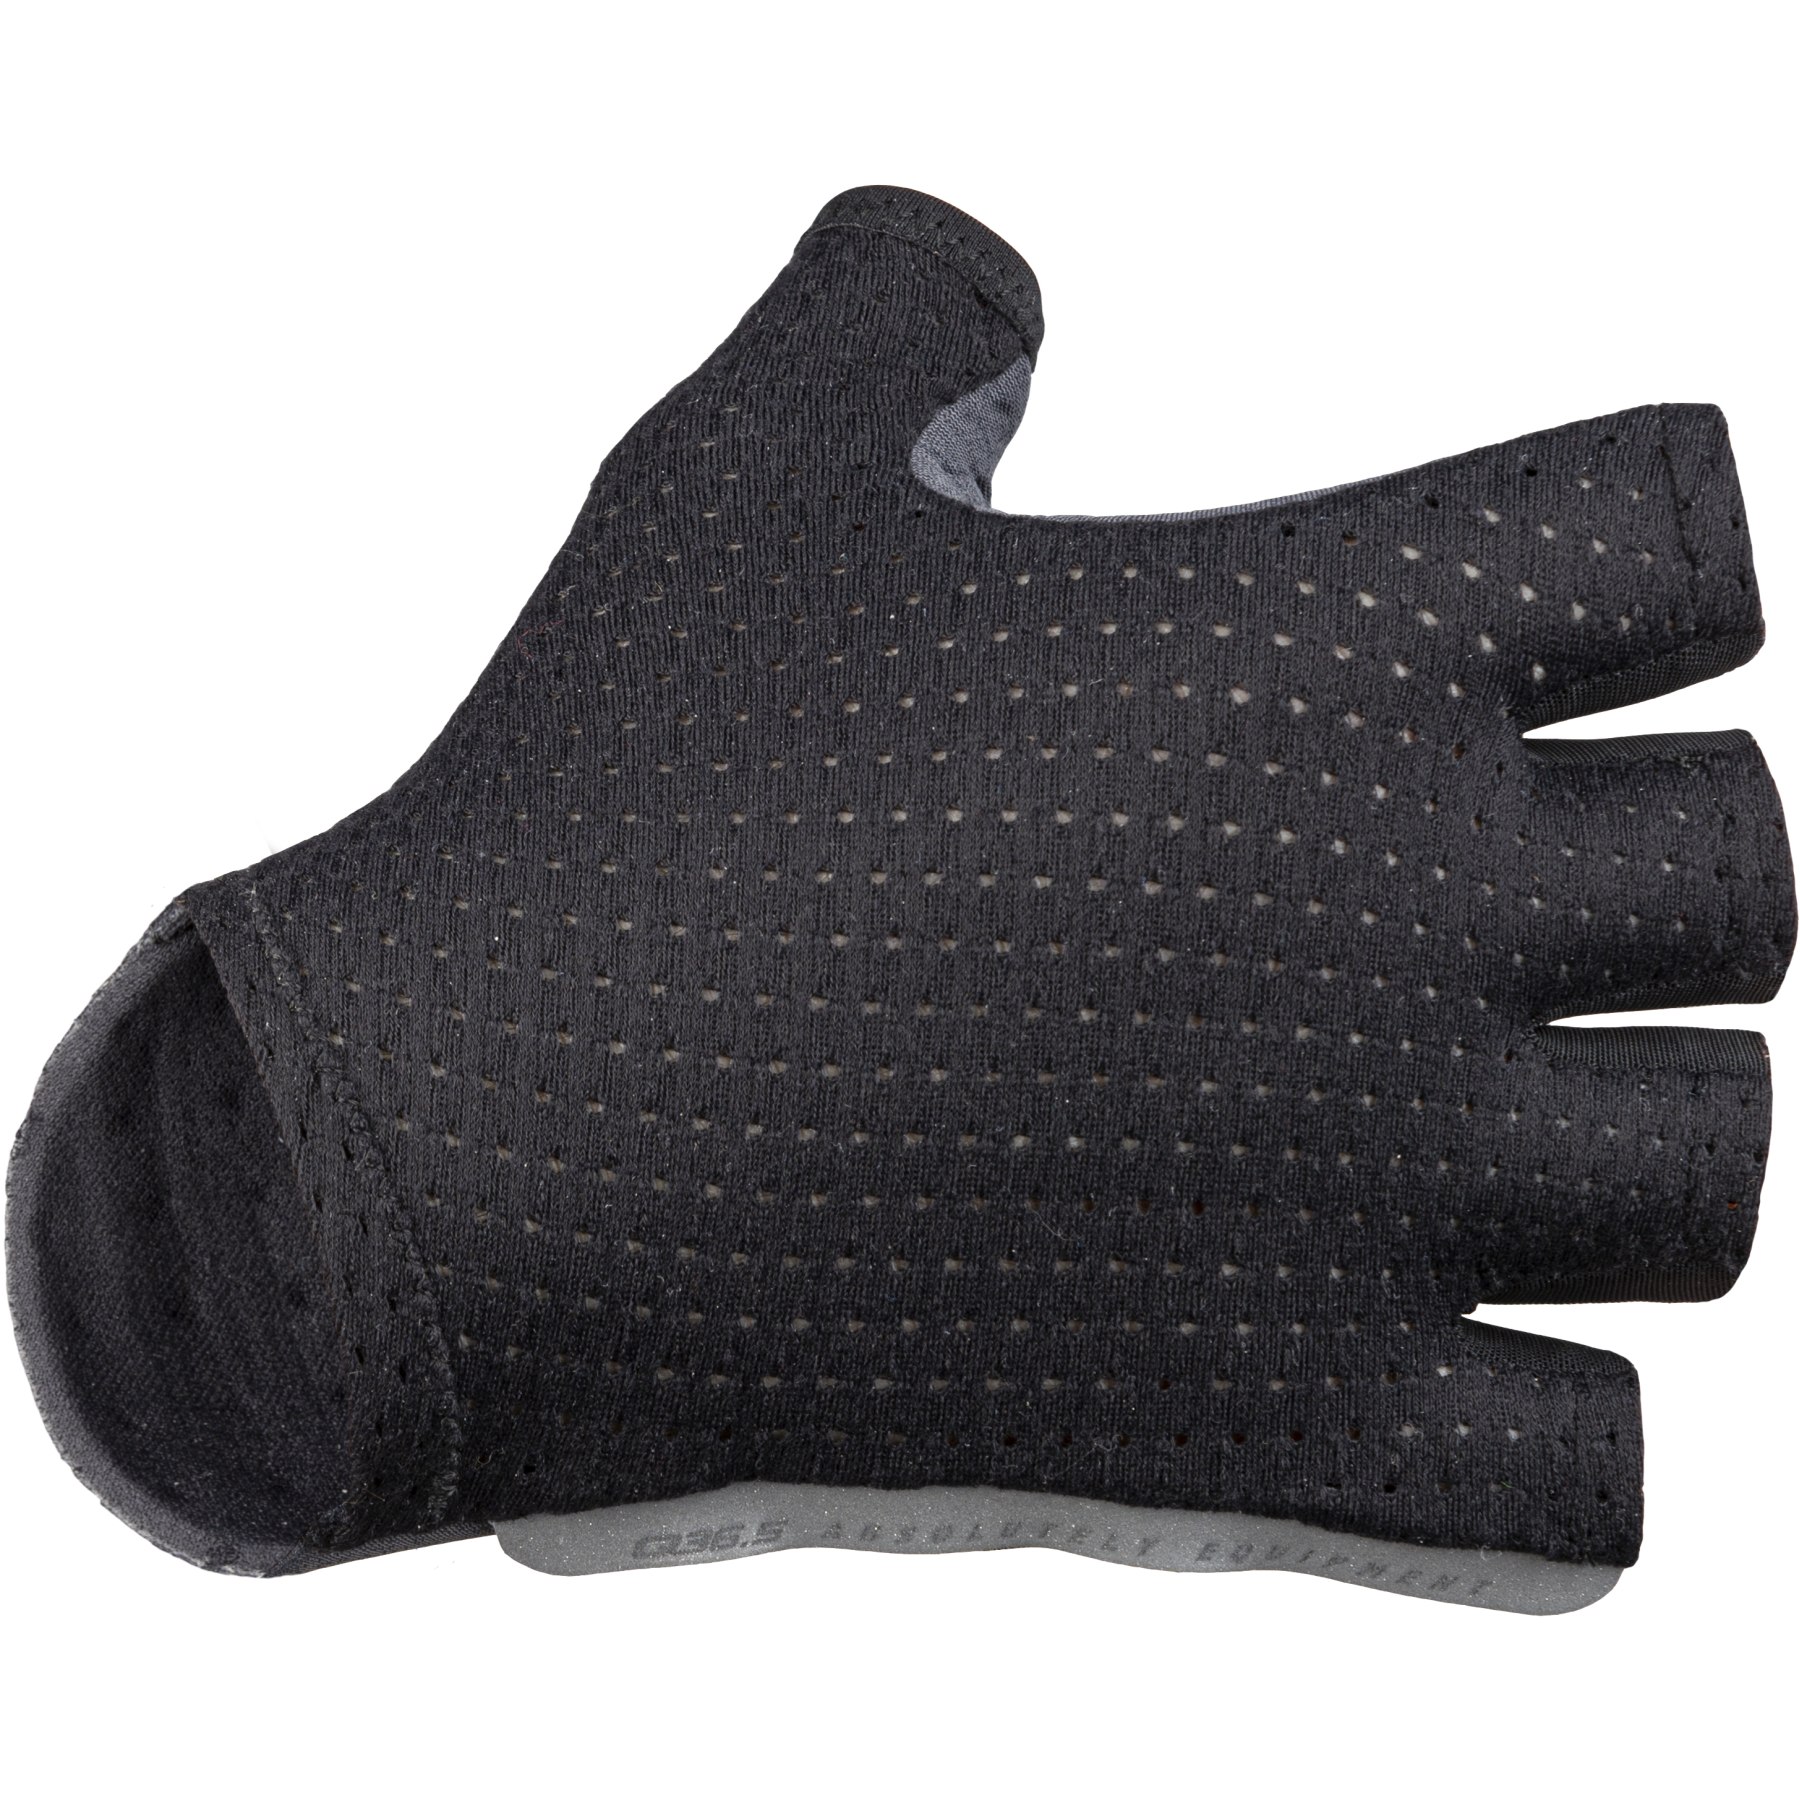 Produktbild von Q36.5 Unique Rennrad Handschuhe - black